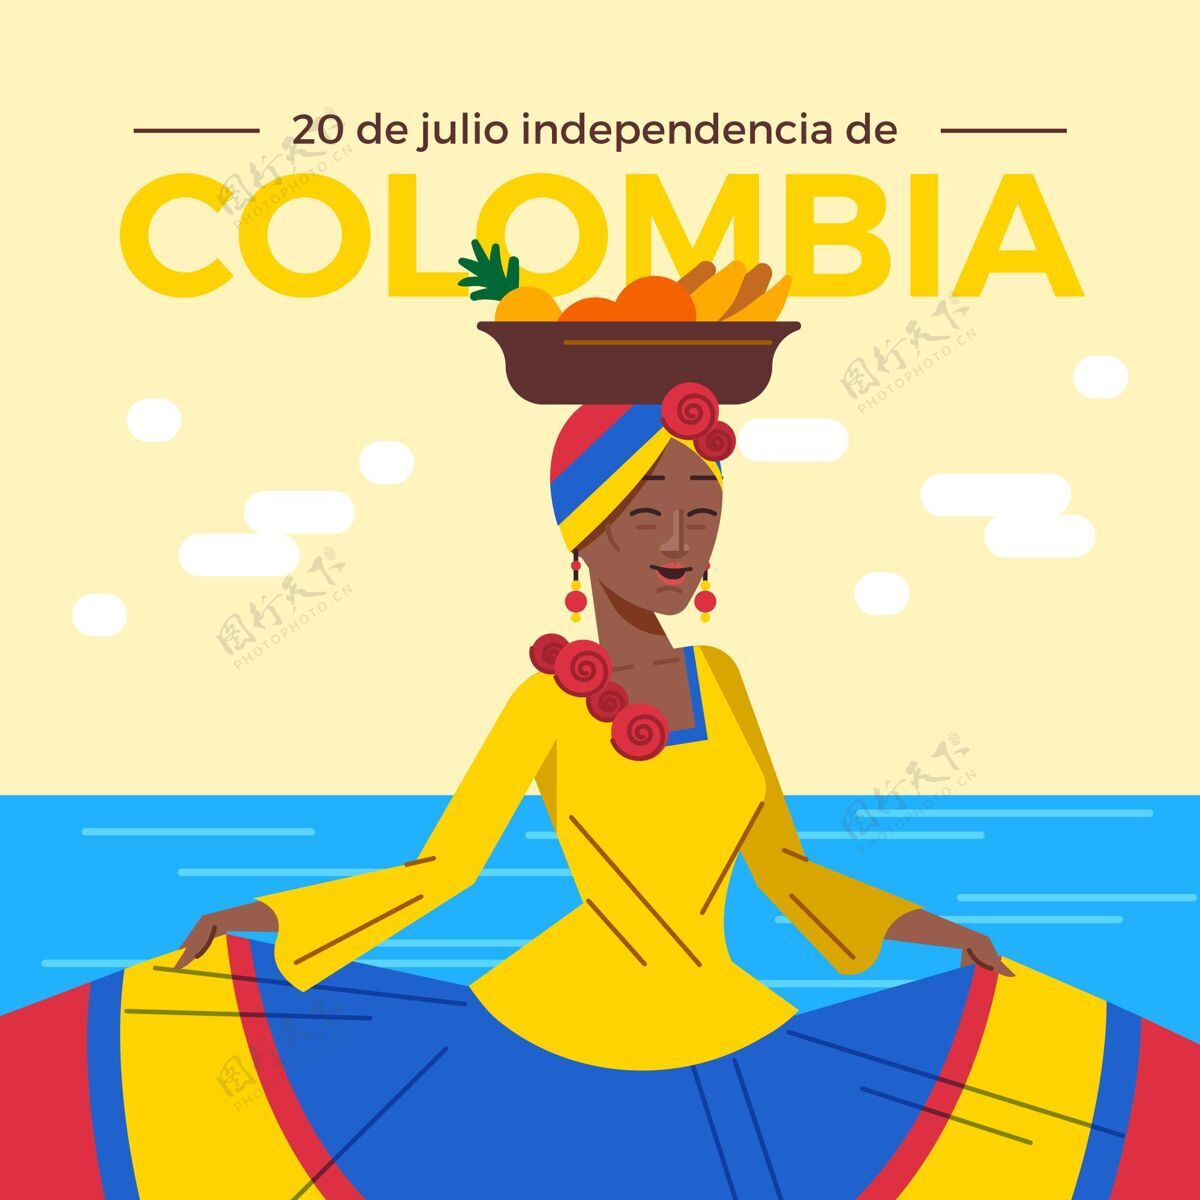 平面设计胡里奥20号公寓-哥伦比亚独立插画独立哥伦比亚活动